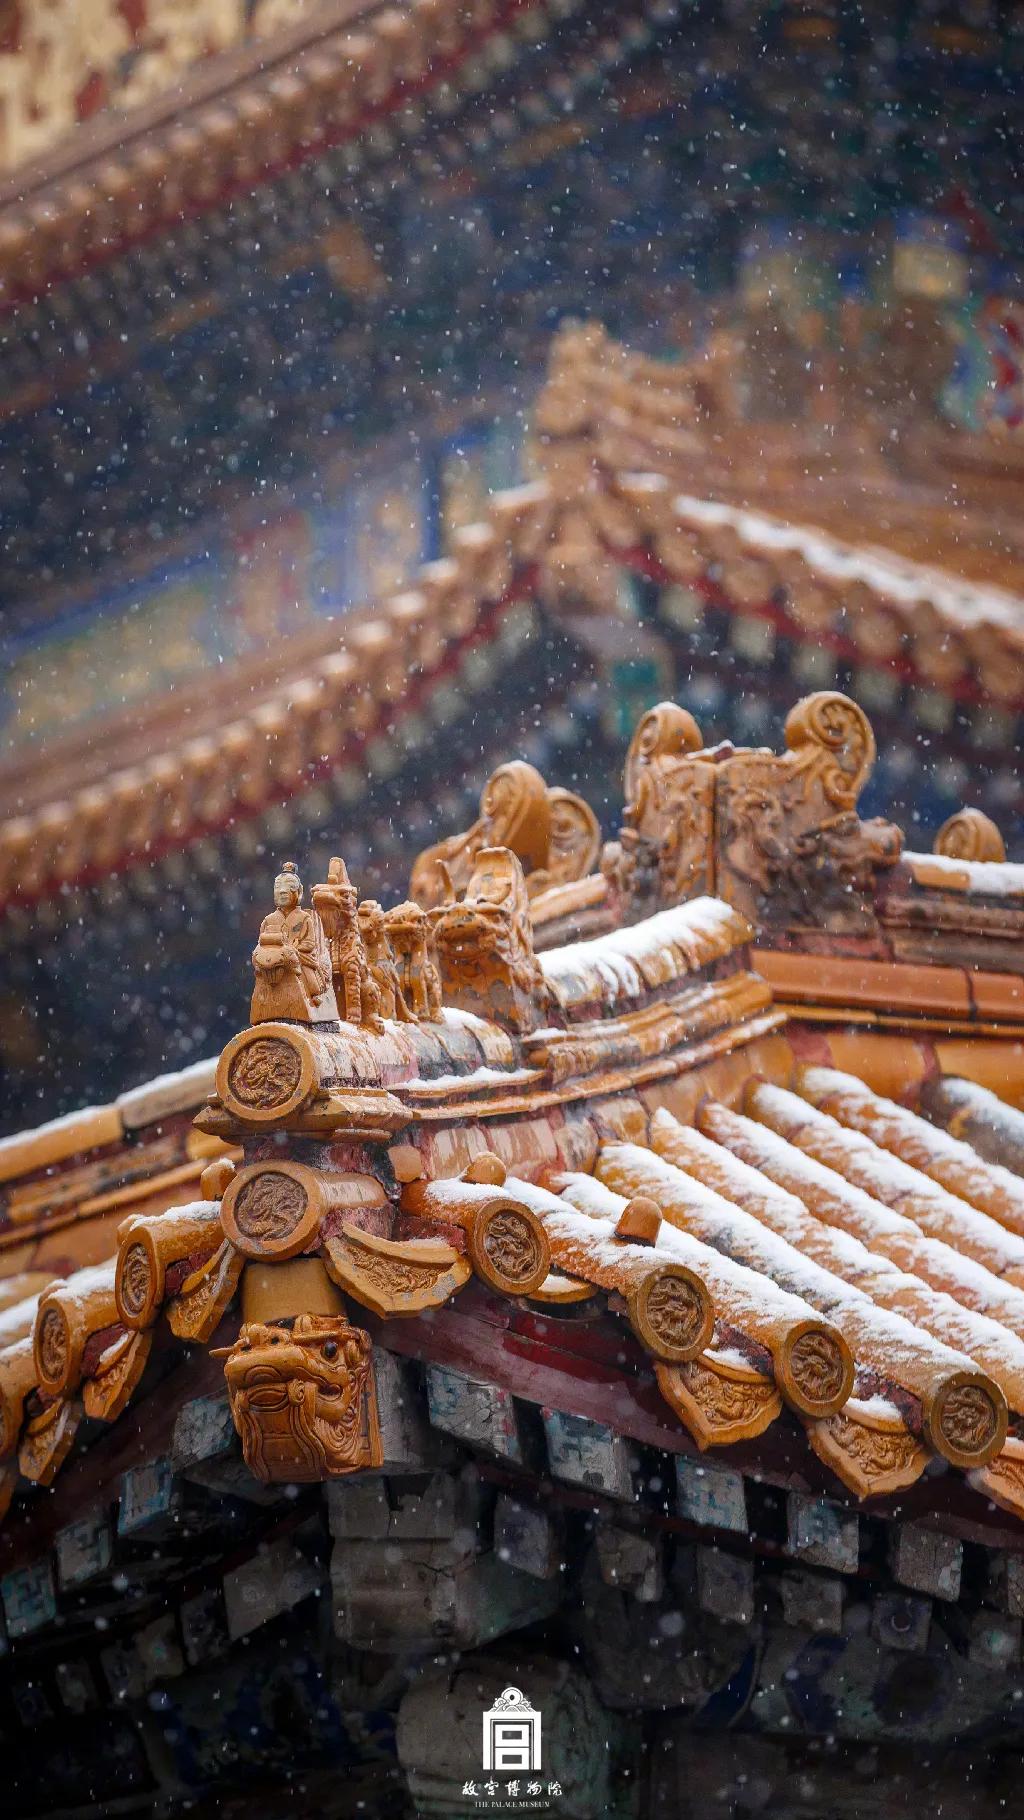 近日,北京城迎来了2020年第一场雪,雪中的故宫异常美丽,有一种穿越的